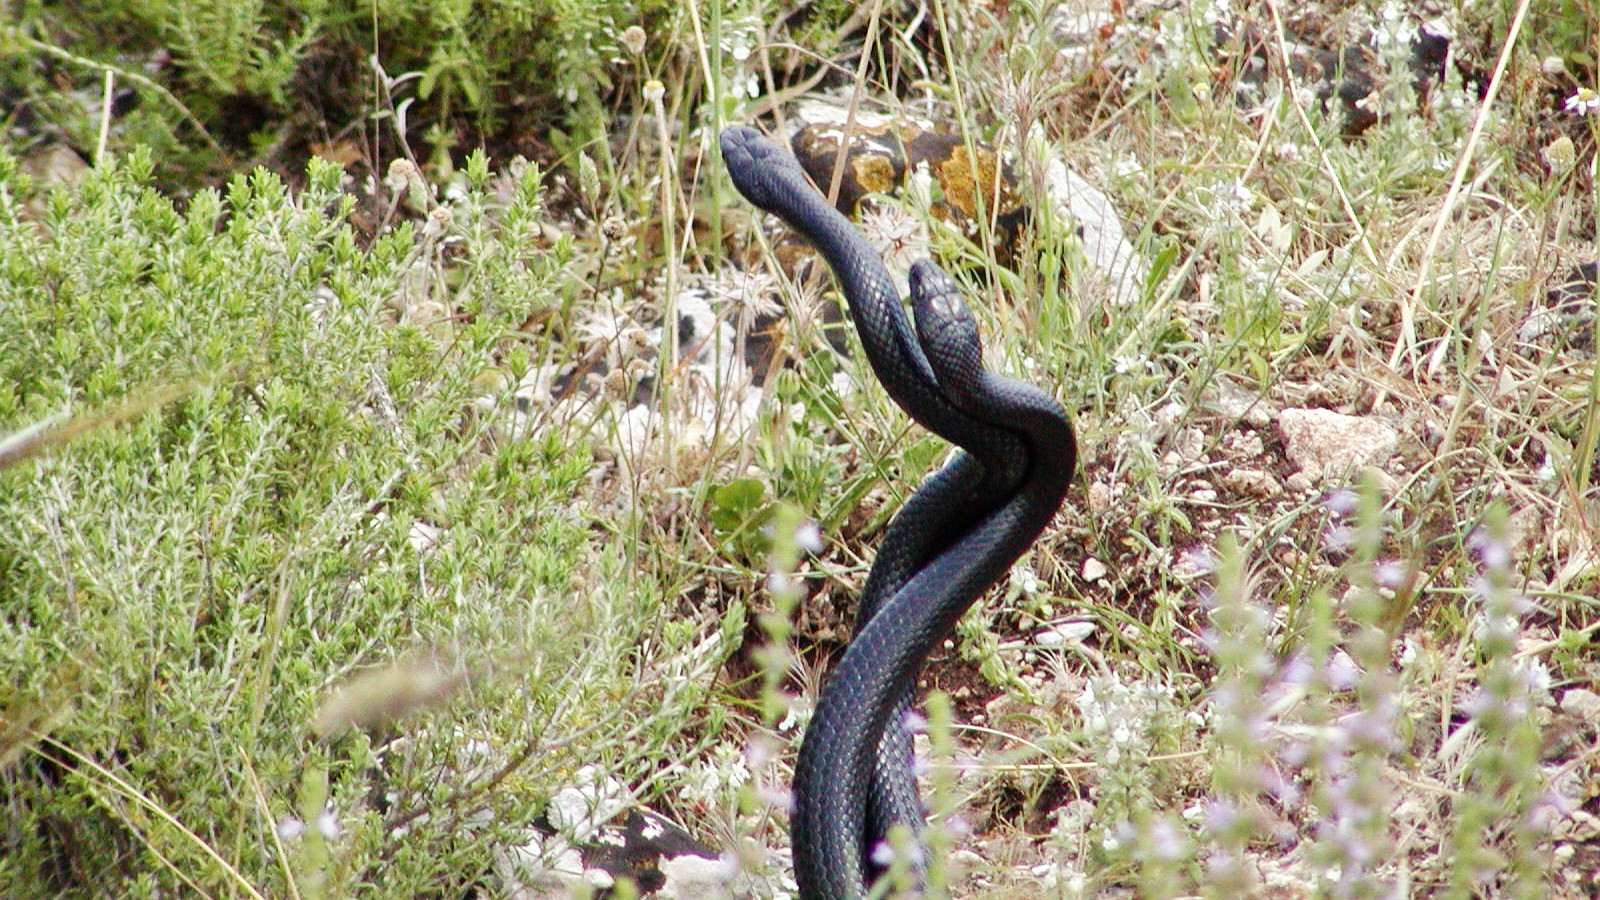 Cavagrande del Cassibile | Snakes